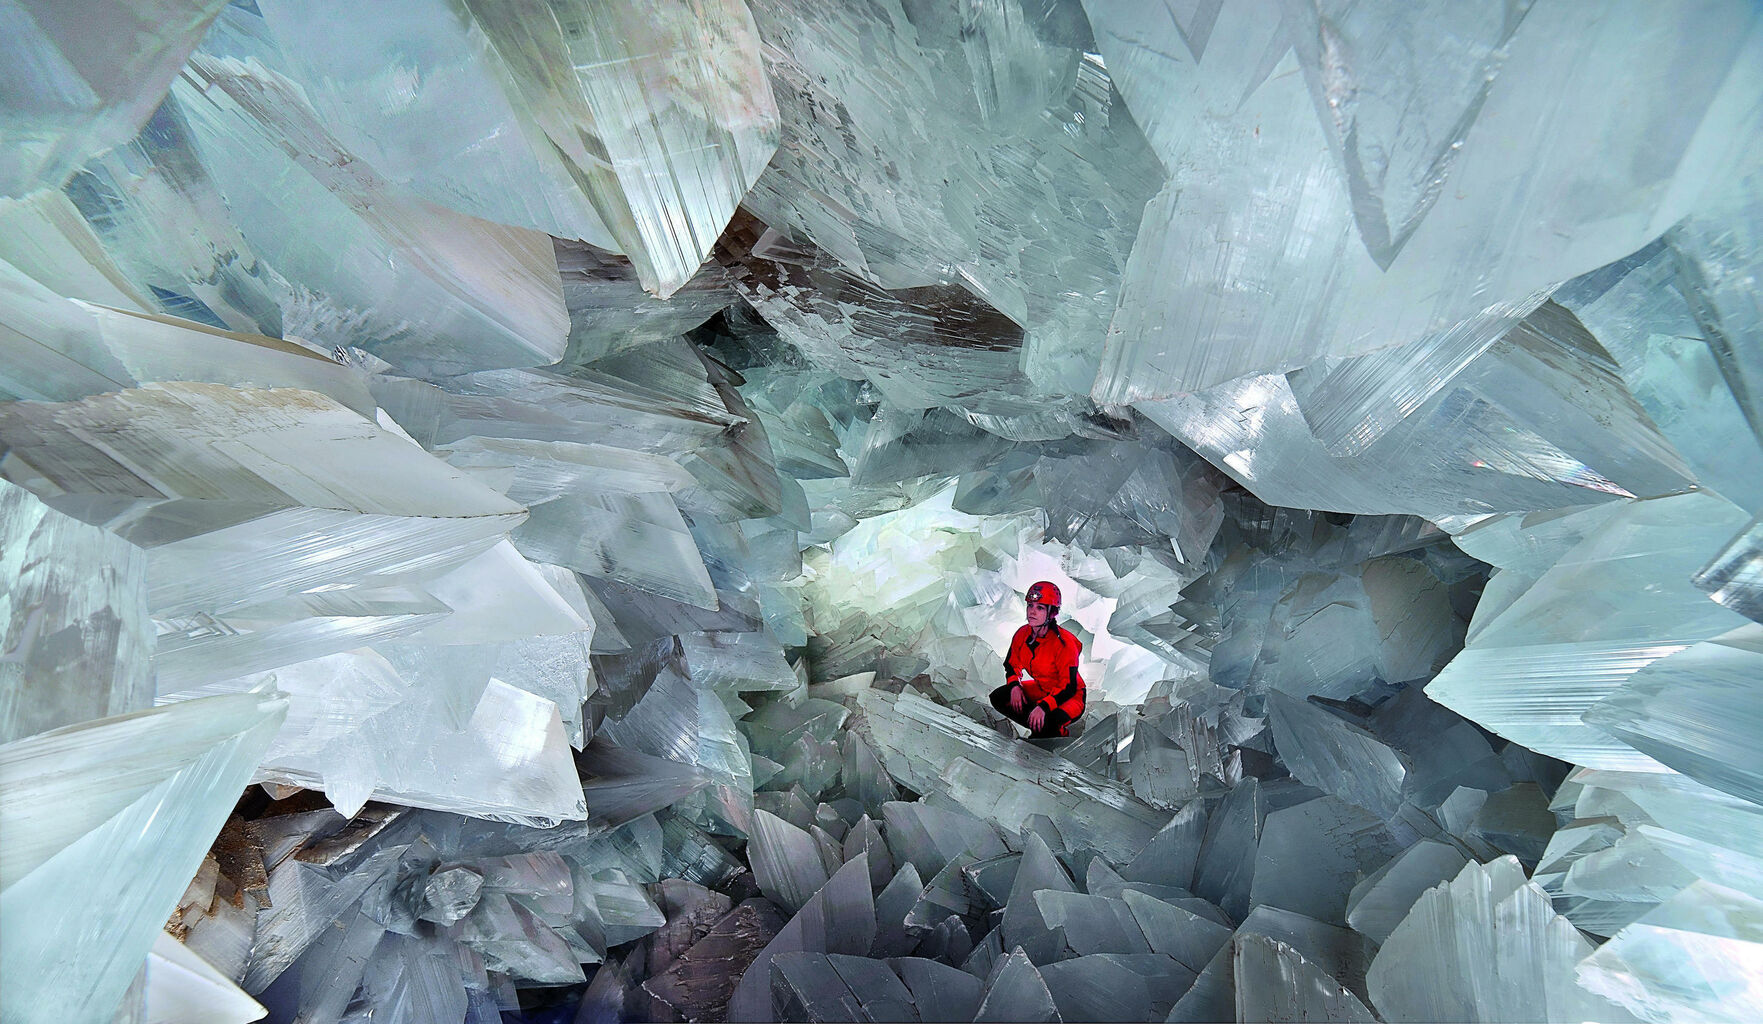 Abren al público ‘La Geoda’, una cueva de cristales gigantes (Video)